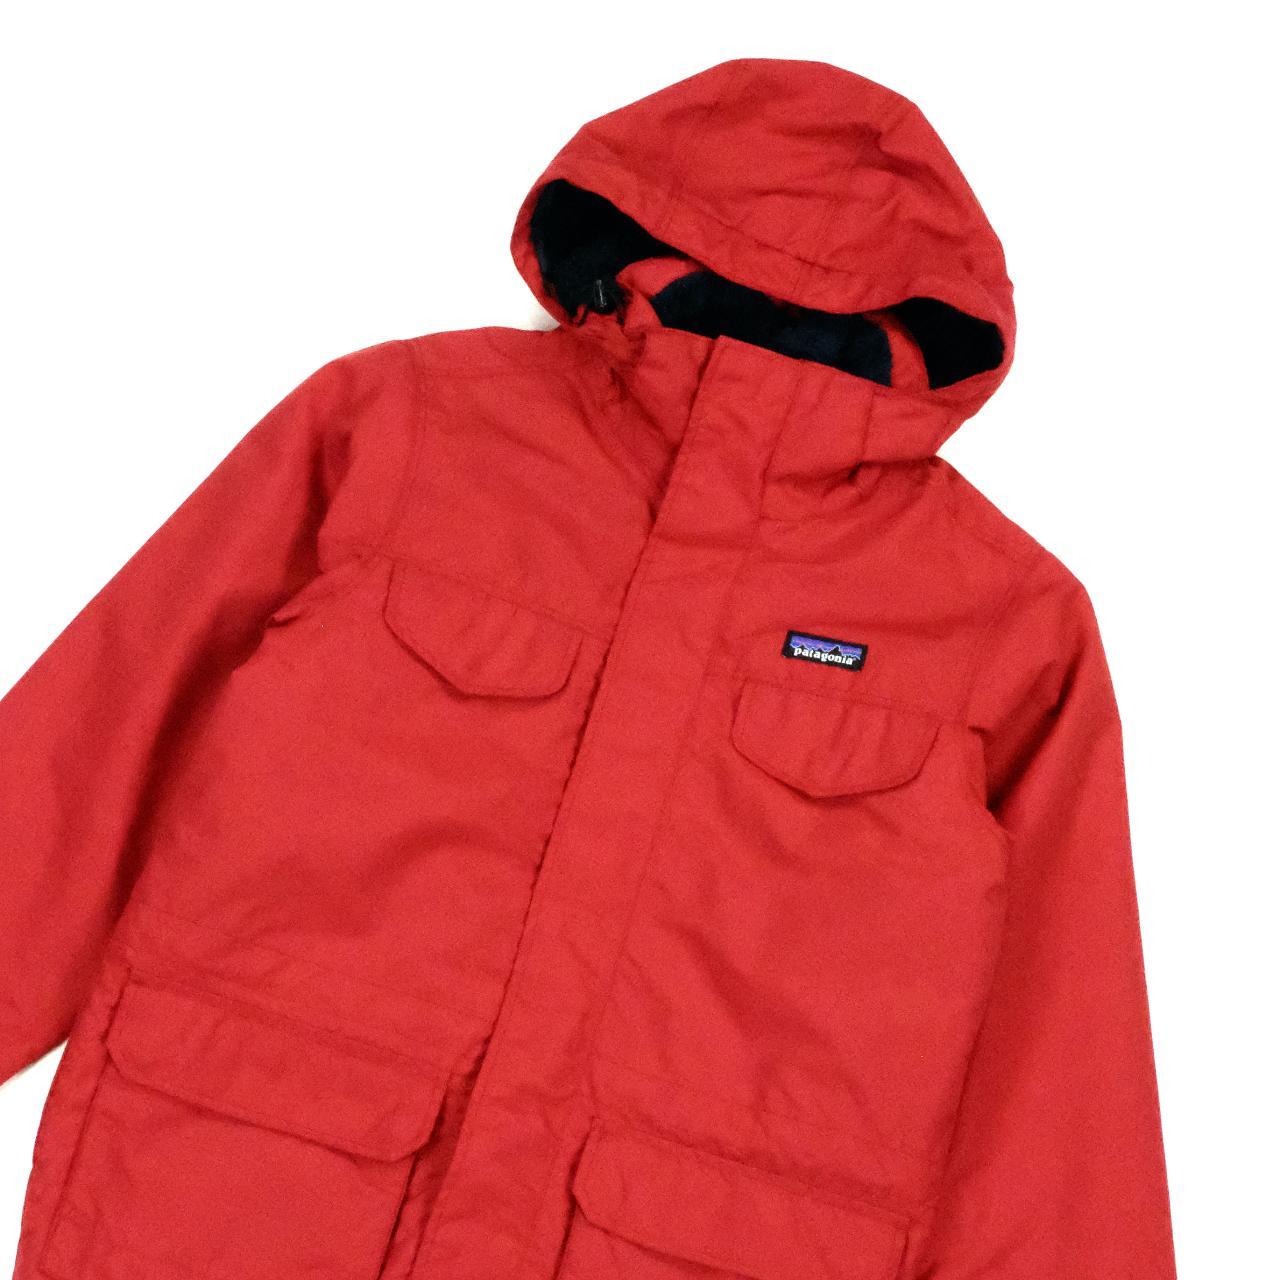 Patagonia Waterproof Jacket